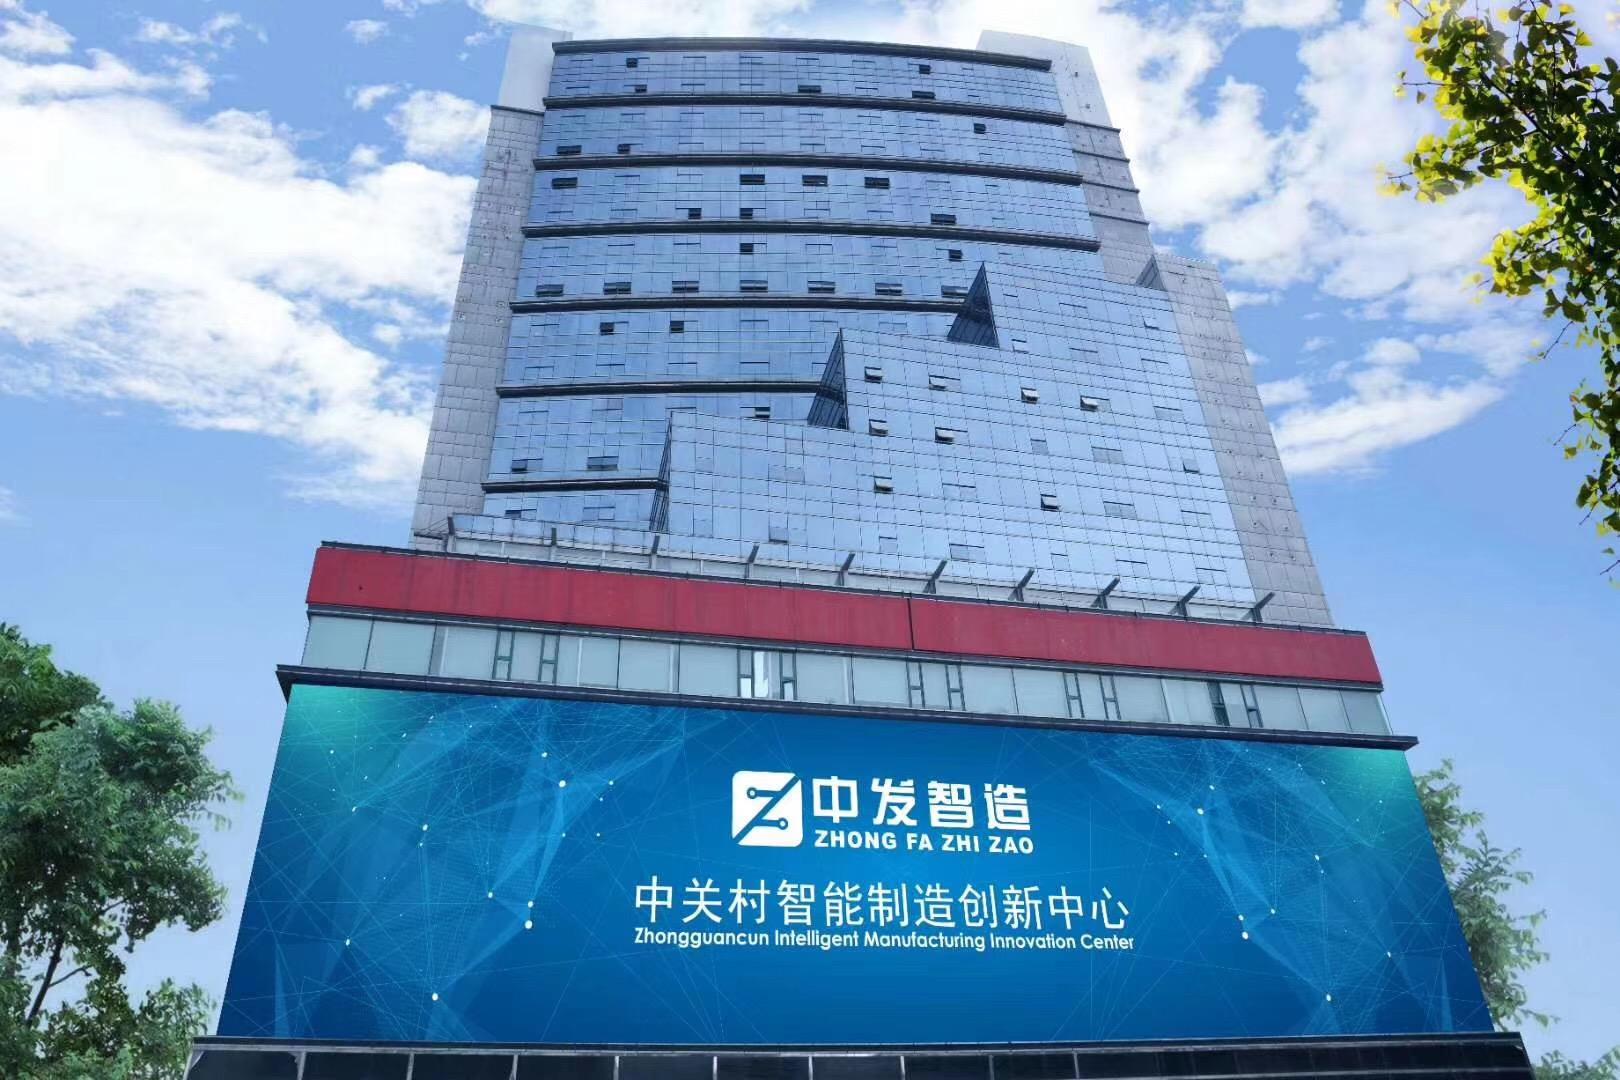 北京创意园区最大容纳200人的会议场地|中关村智能制造创新中心的价格与联系方式